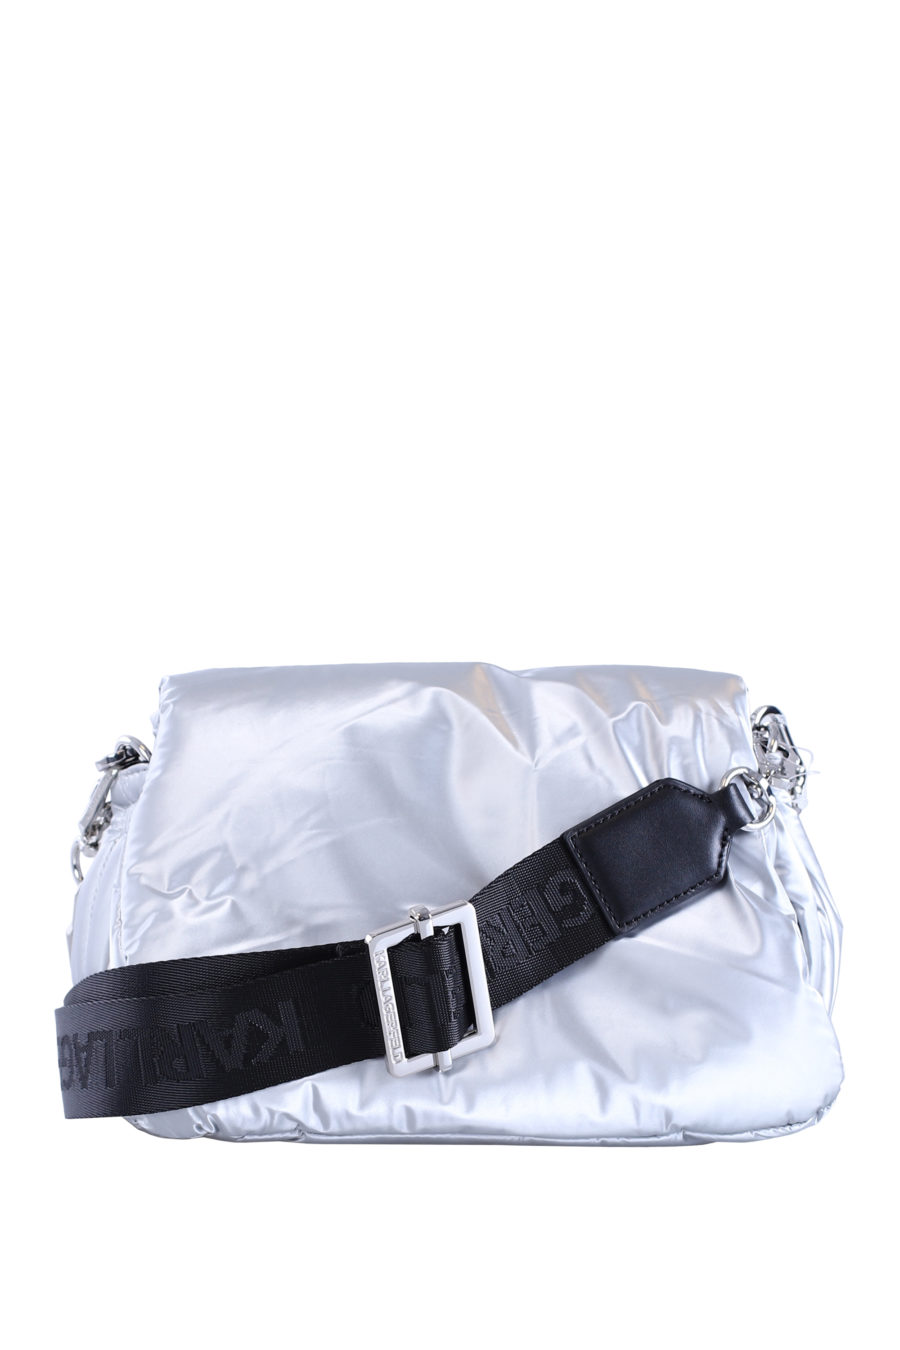 Silver shoulder bag - IMG 8982